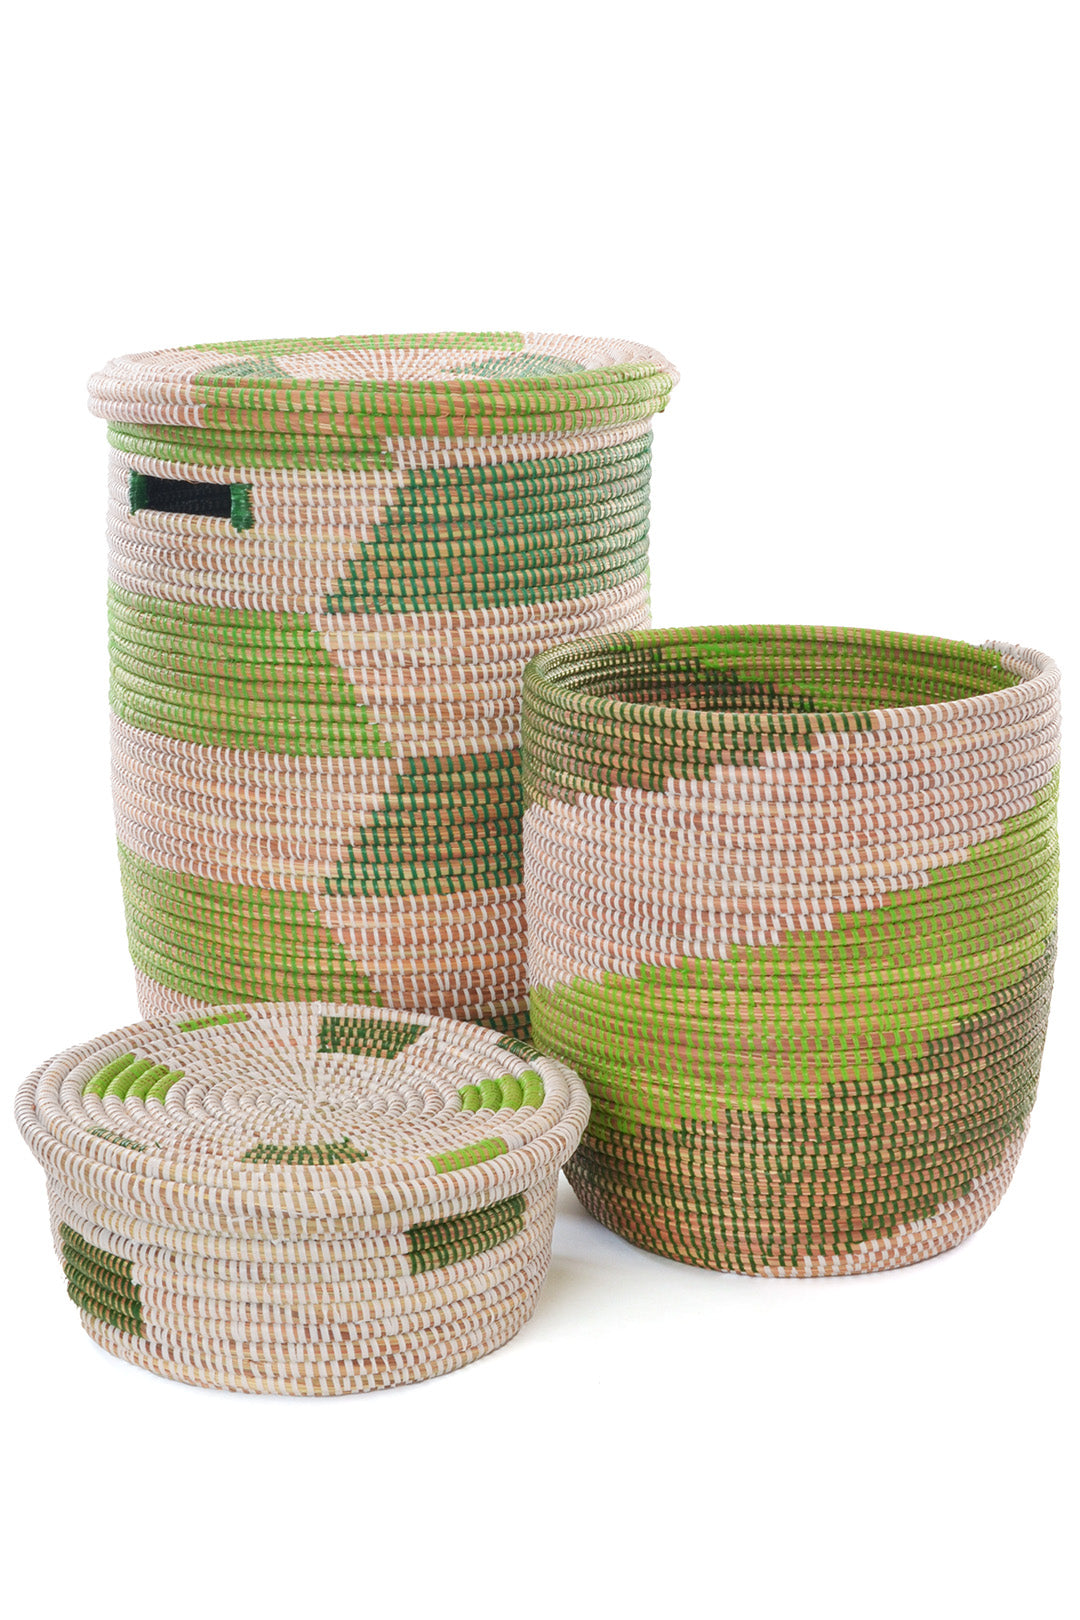 Leafy Green Hamper & Baskets Set